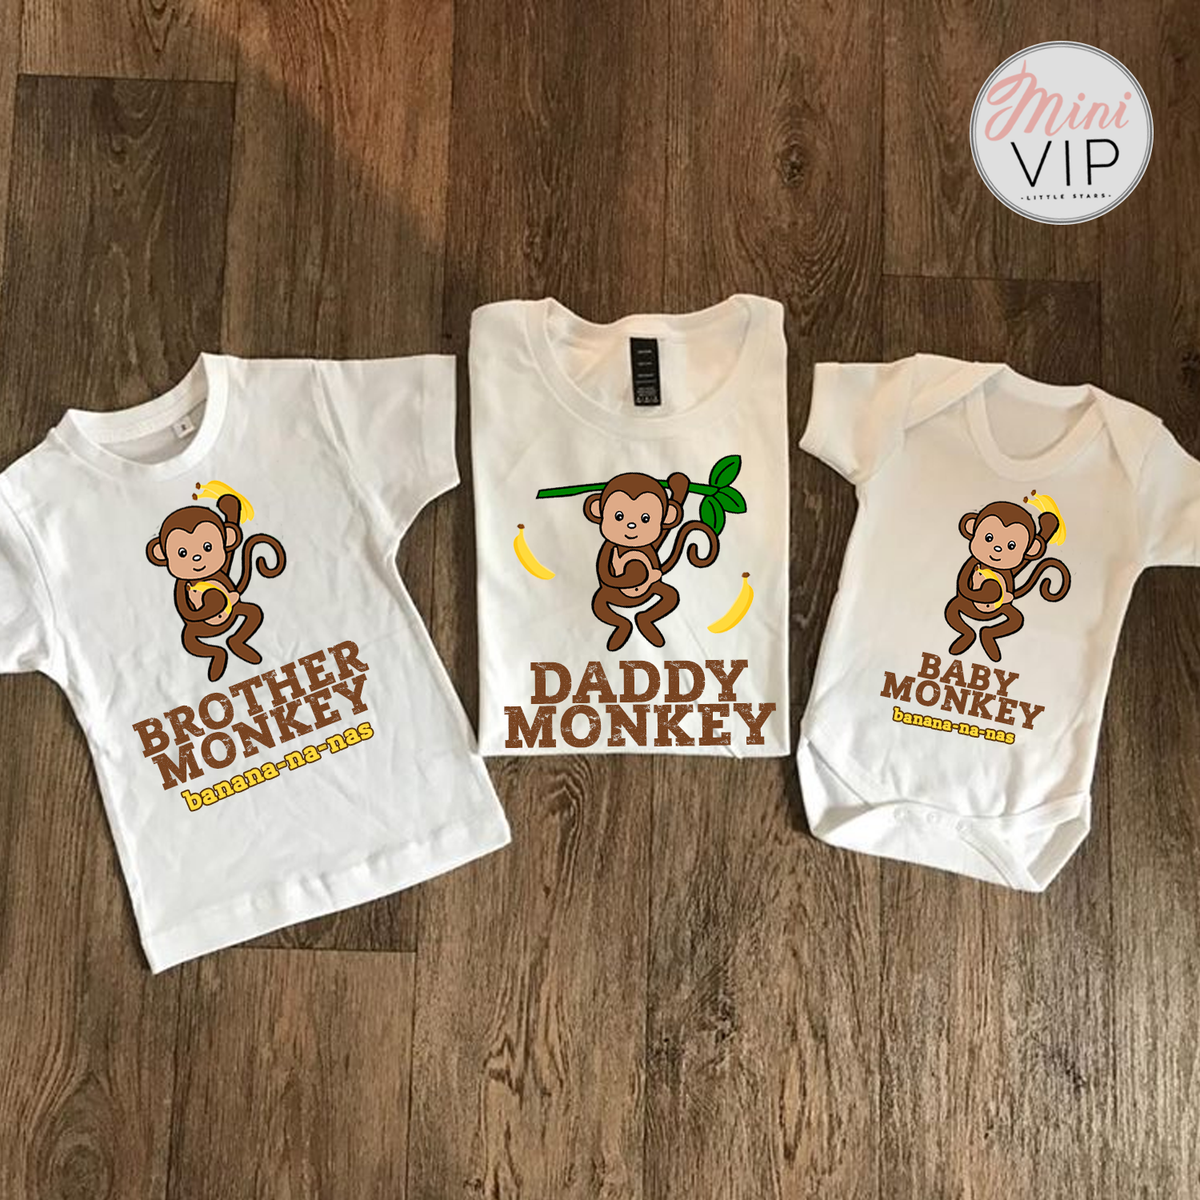 Monkey Banana-na-nas t-shirts - adult sizes